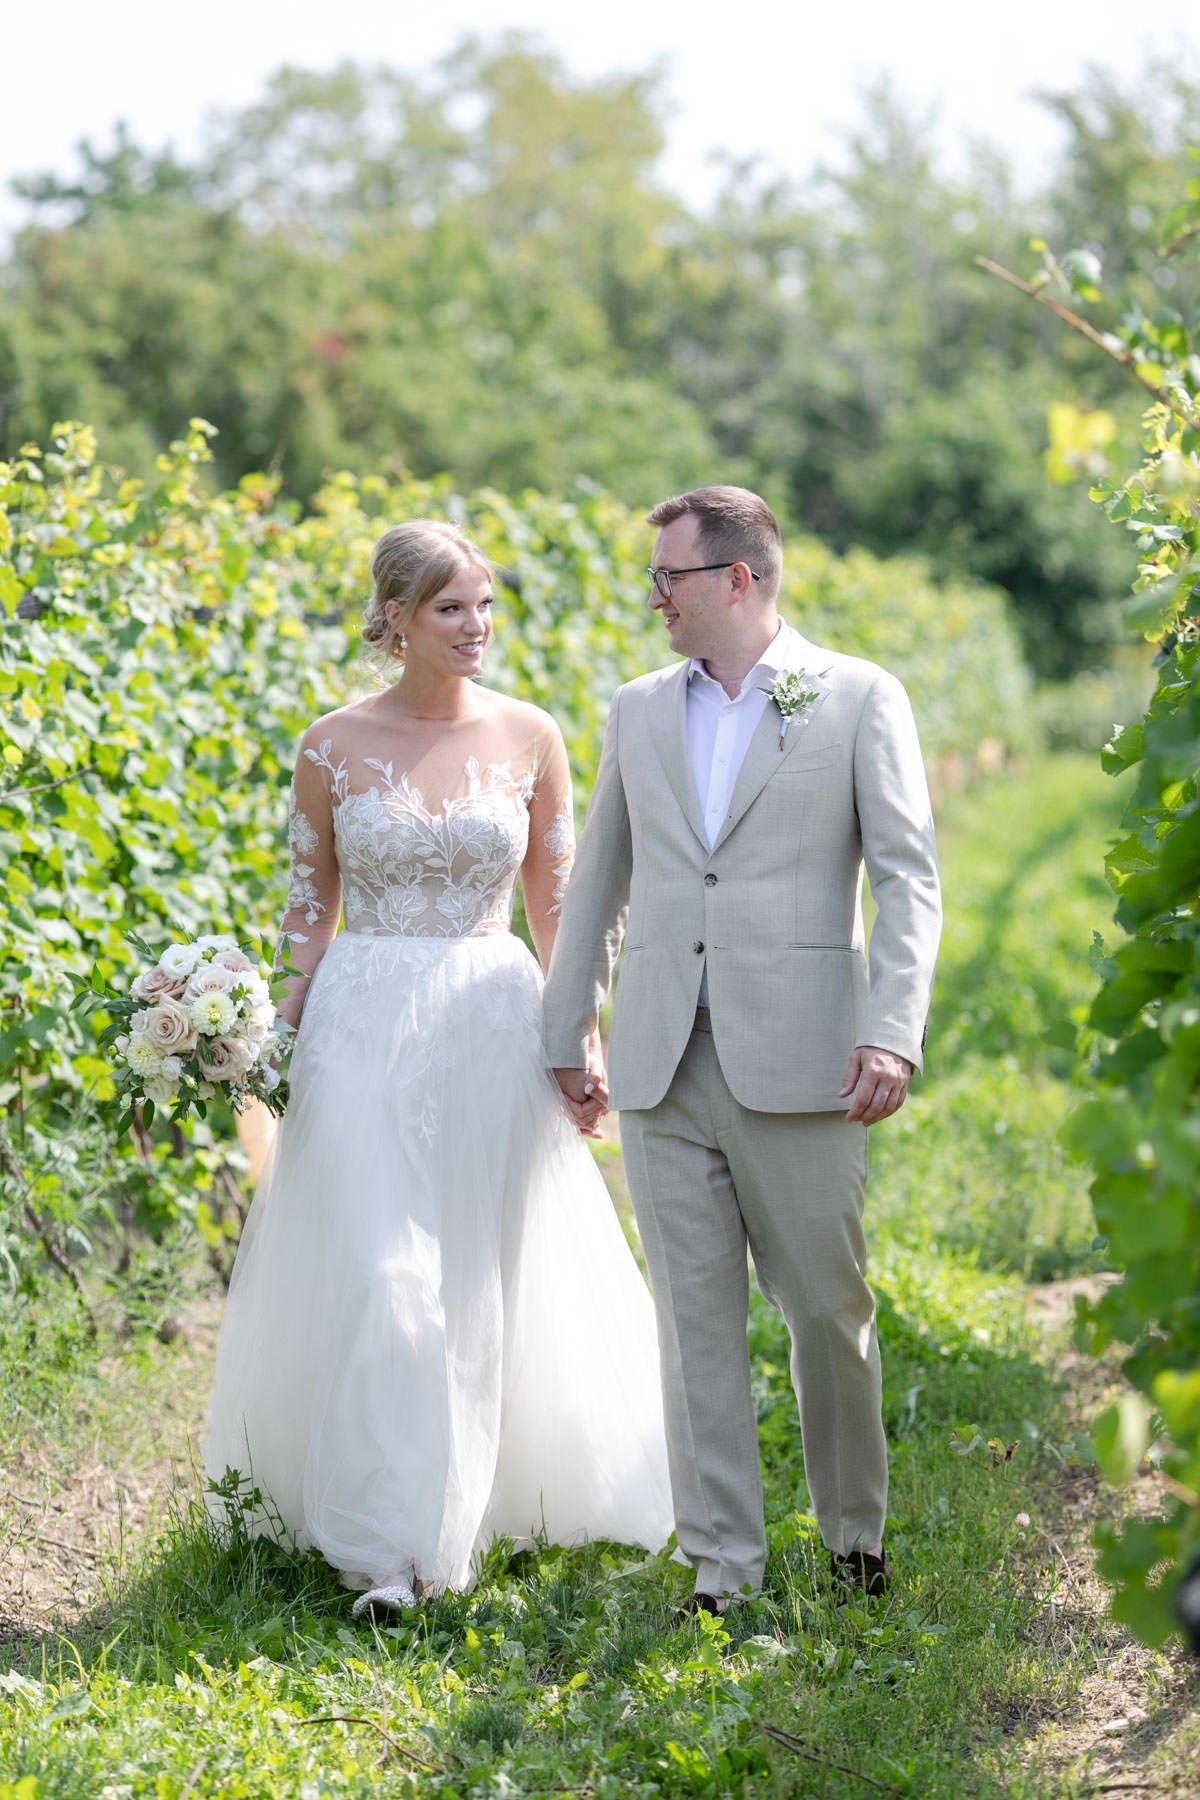 Calamus-Winery-Wedding-Vineyard-Bride-Photo-by-Philosophy-Studios-053.JPG